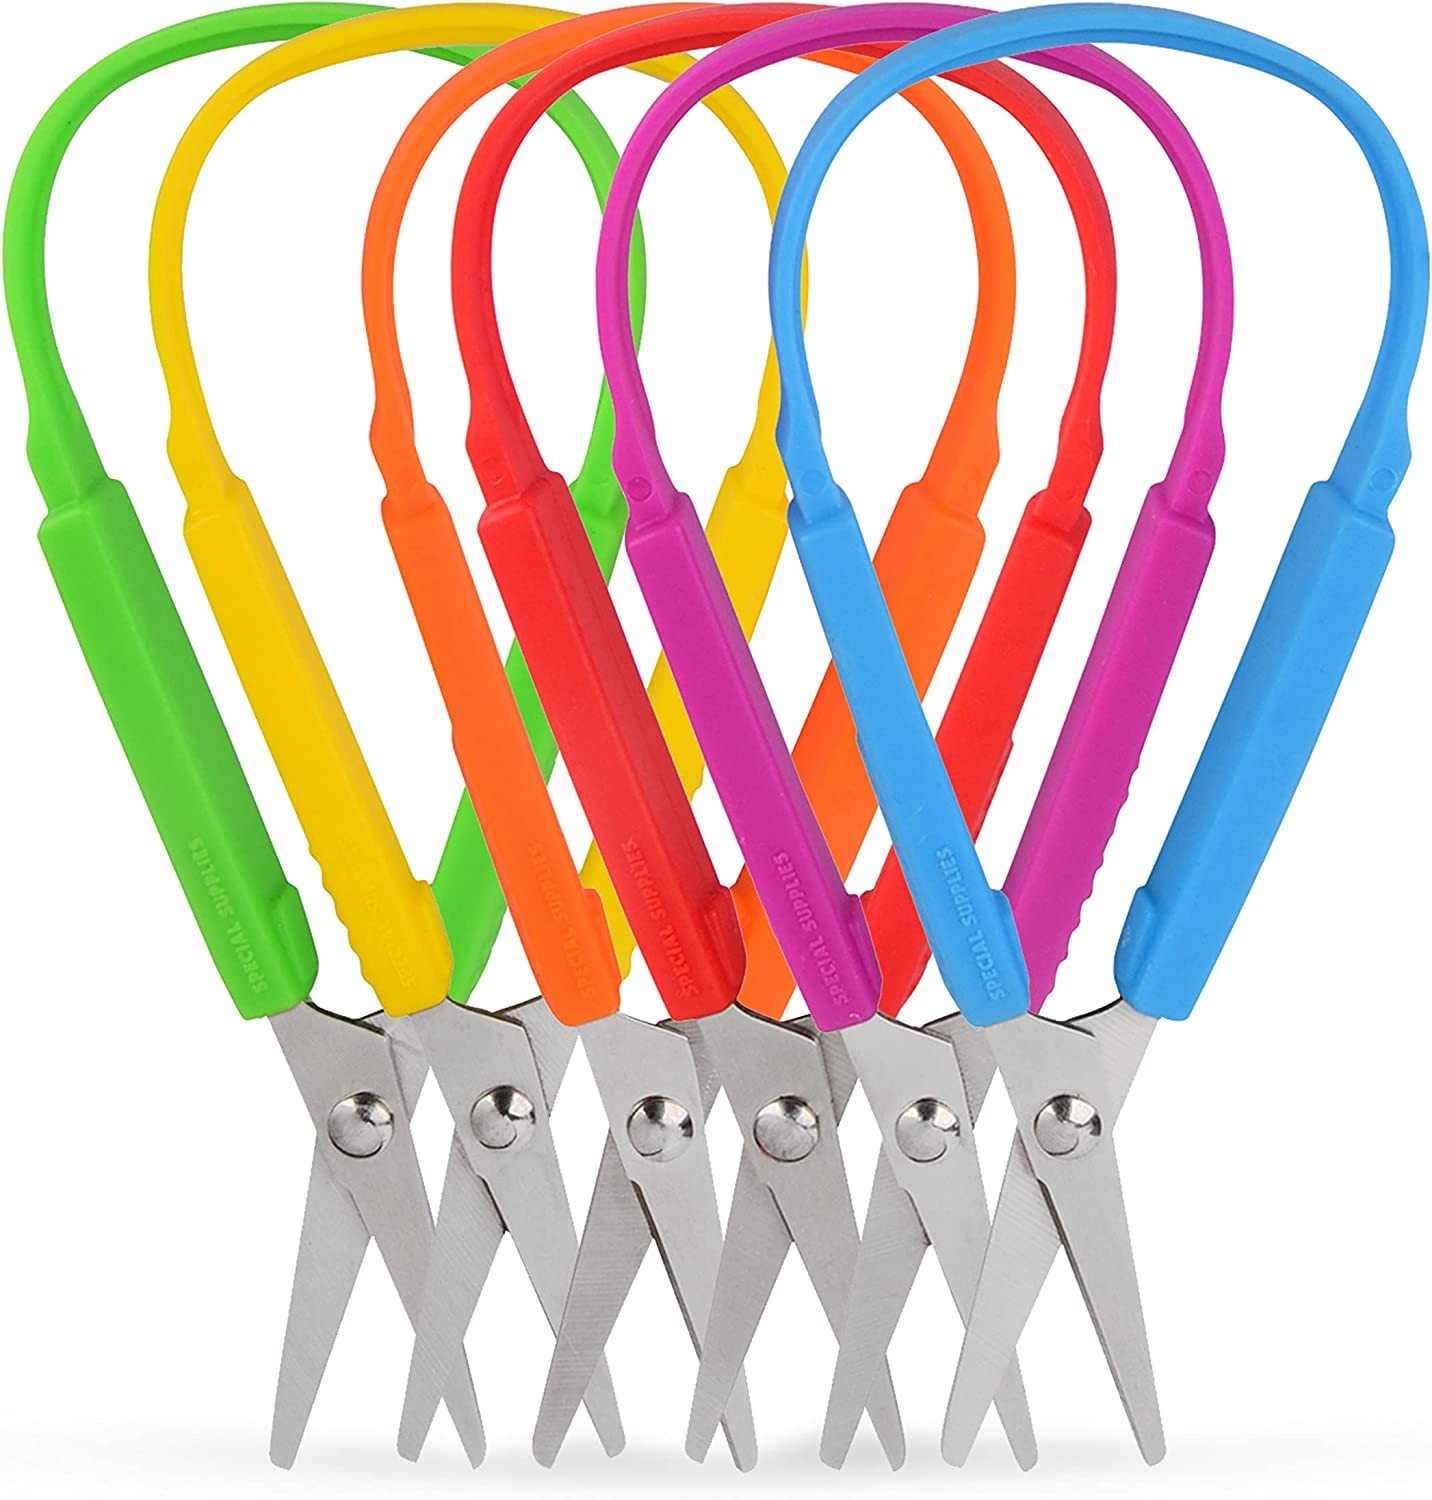 5.5'' colorful grip easy loop scissors